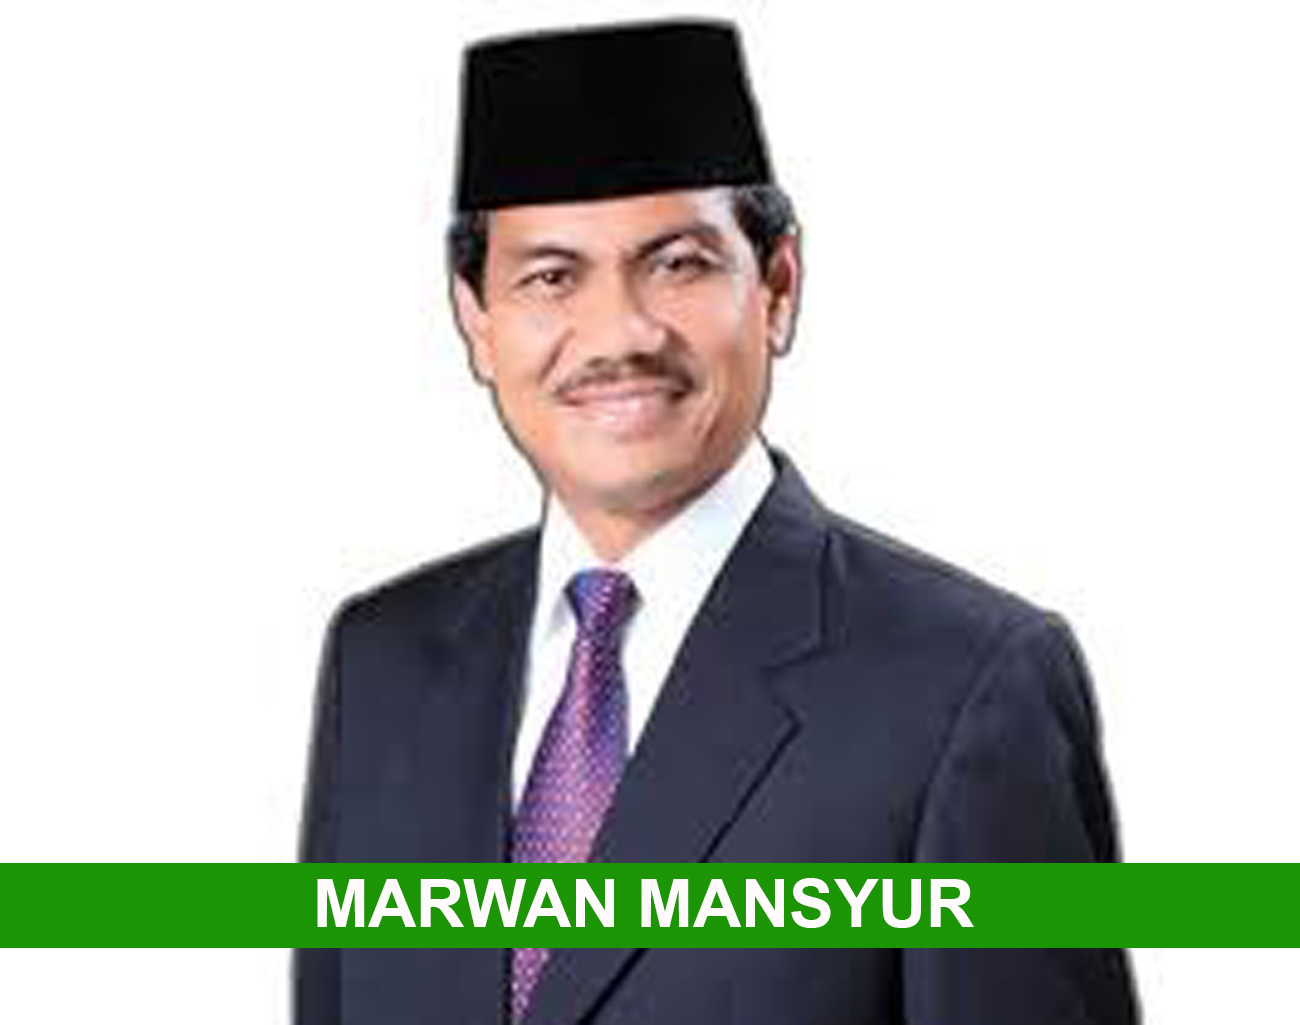 Inilah Kabar Terbaru Marwan Mansyur, Mantan Bupati Lahat Jadi Caleg DPRD Sumsel